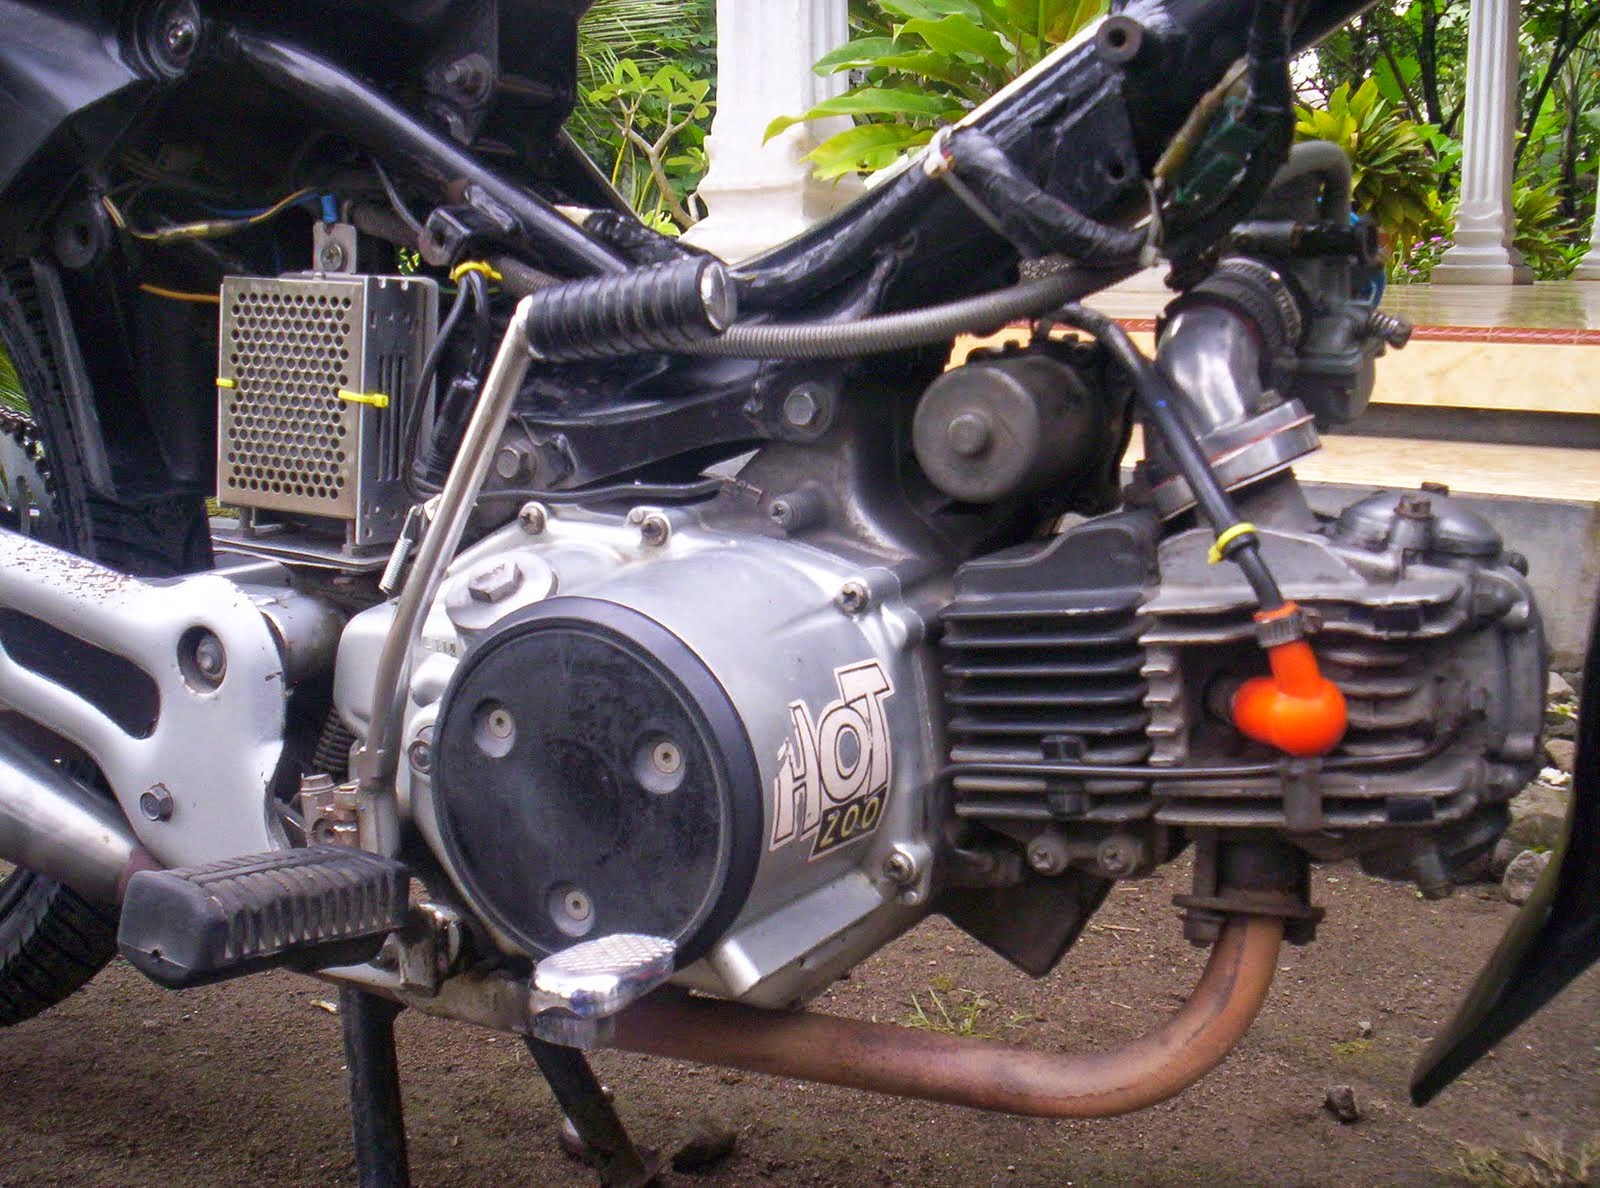 Foto Modifikasi Motor Kawasaki Blitz R